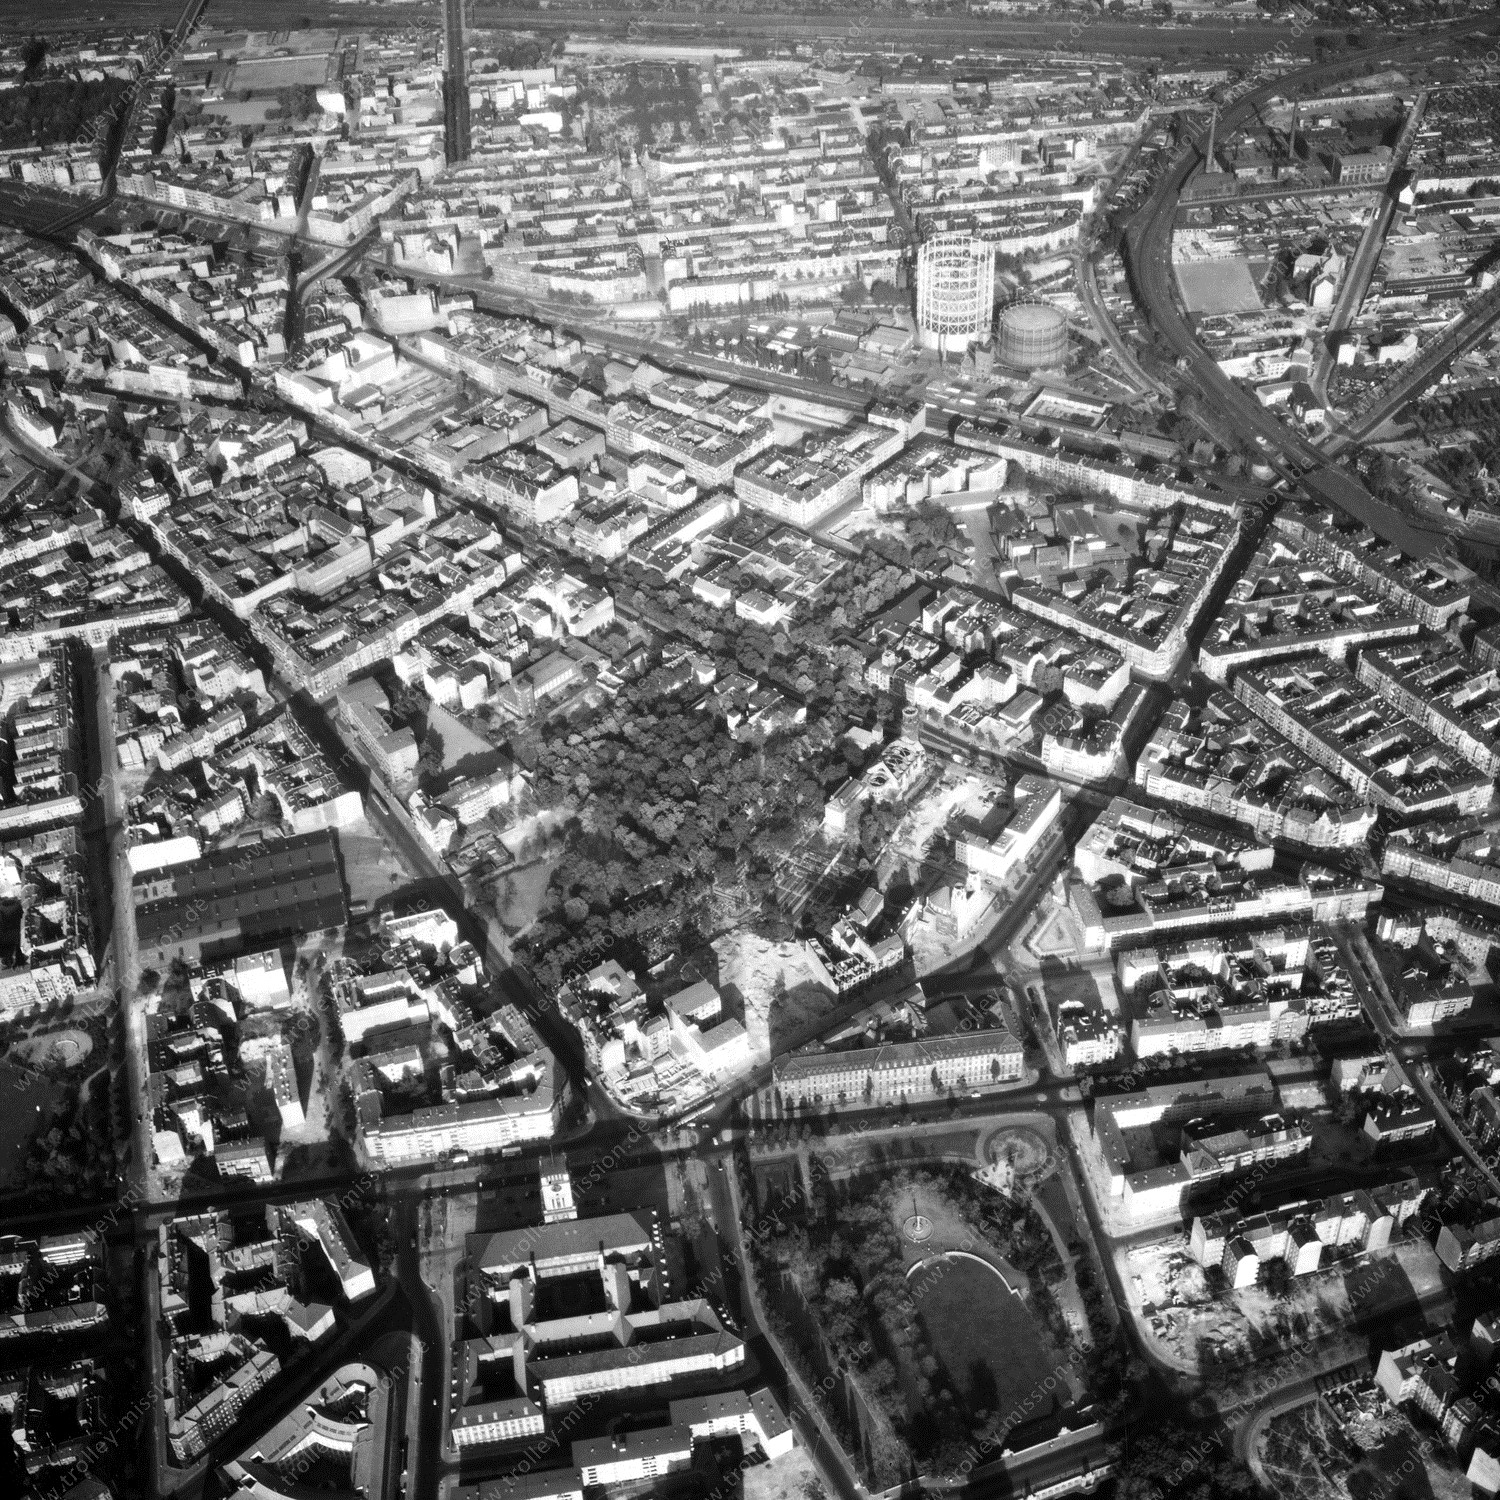 Alte Fotos und Luftbilder von Berlin - Luftbildaufnahme Nr. 01 - Historische Luftaufnahmen von West-Berlin aus dem Jahr 1954 - Flugstrecke Foxtrot